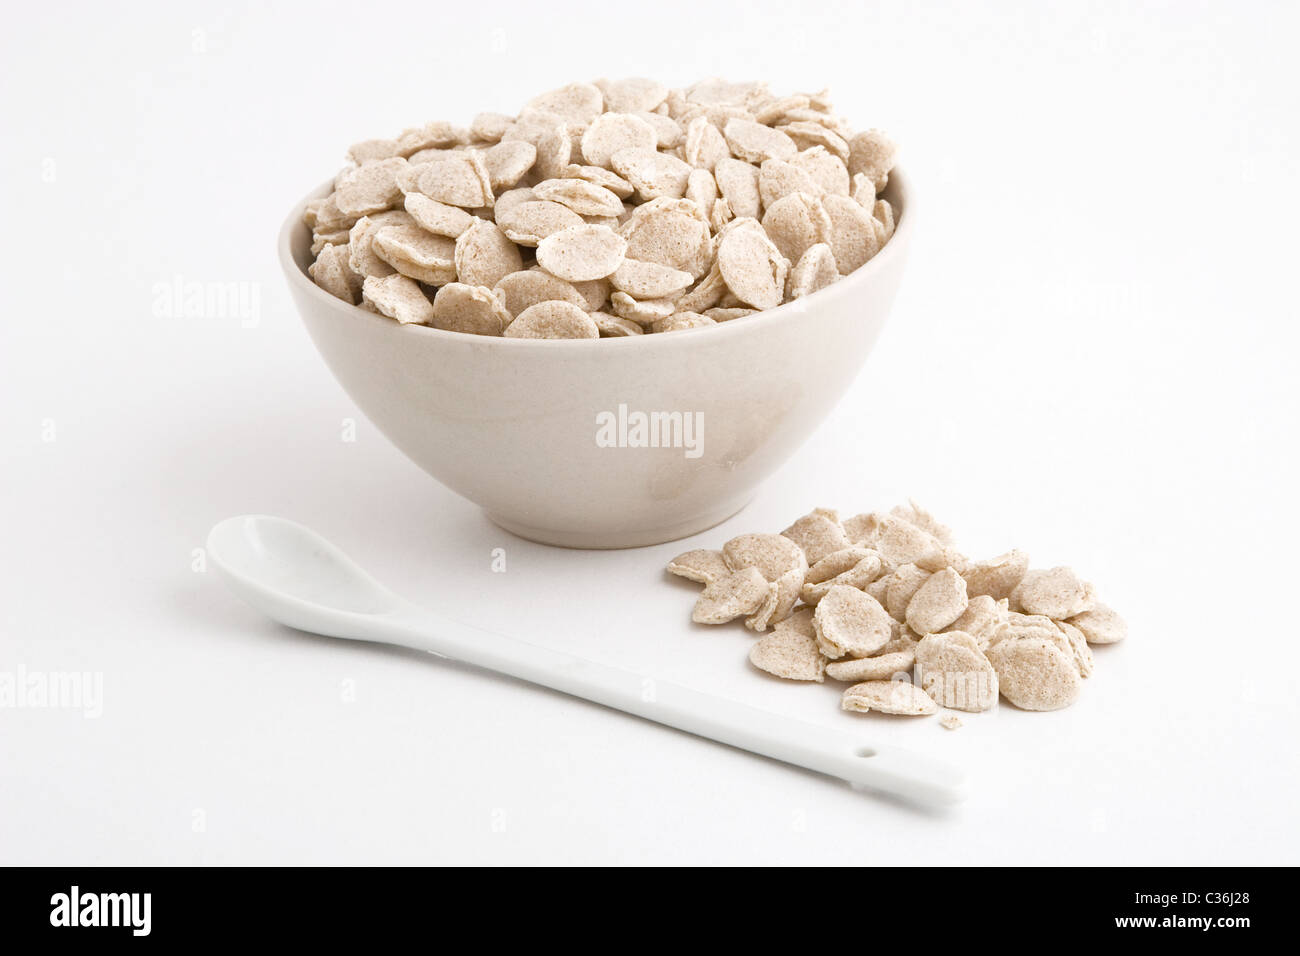 Vista frontale della vaschetta dei cereali su sfondo bianco Foto Stock